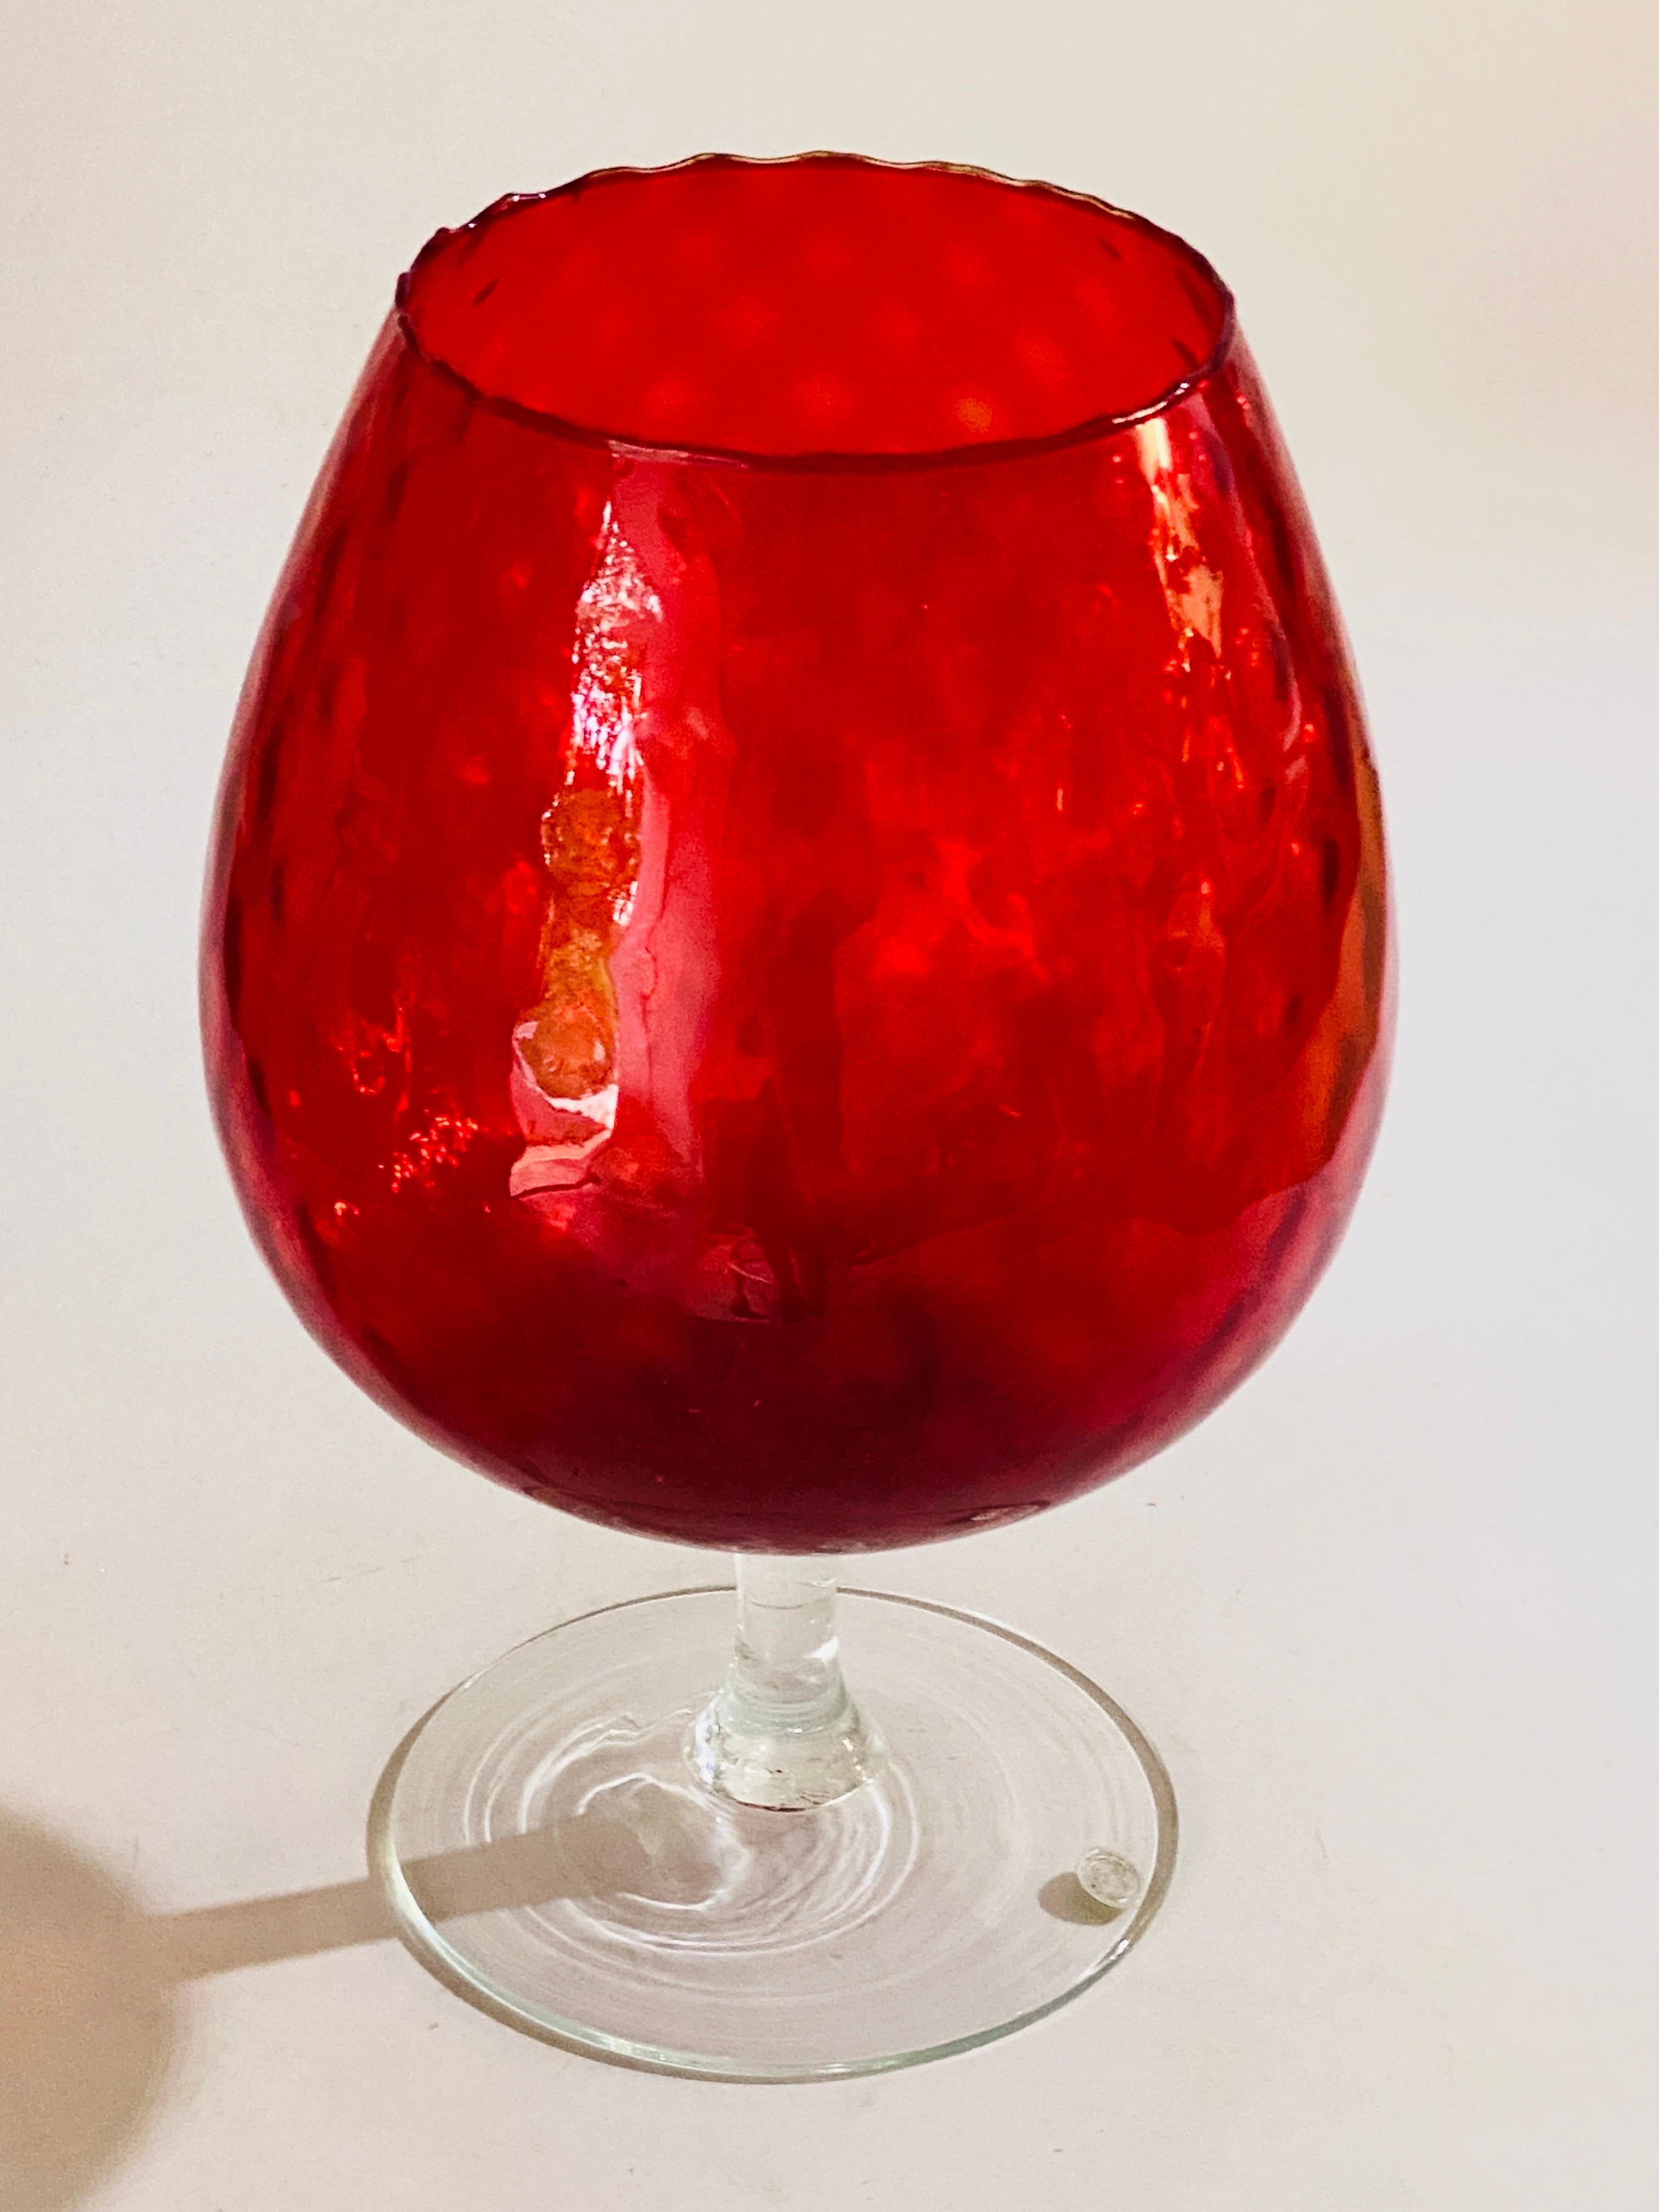 Il s'agit d'un véritable grand vase en verre d'art Empoli, avec la baguette utilisée par Empoli, blanc fabriqué en Italie. Il s'agit d'un verre de Murano, le vase est lourd et grand, et en parfait état. La couleur en rouge, 
Le corps du vase est en